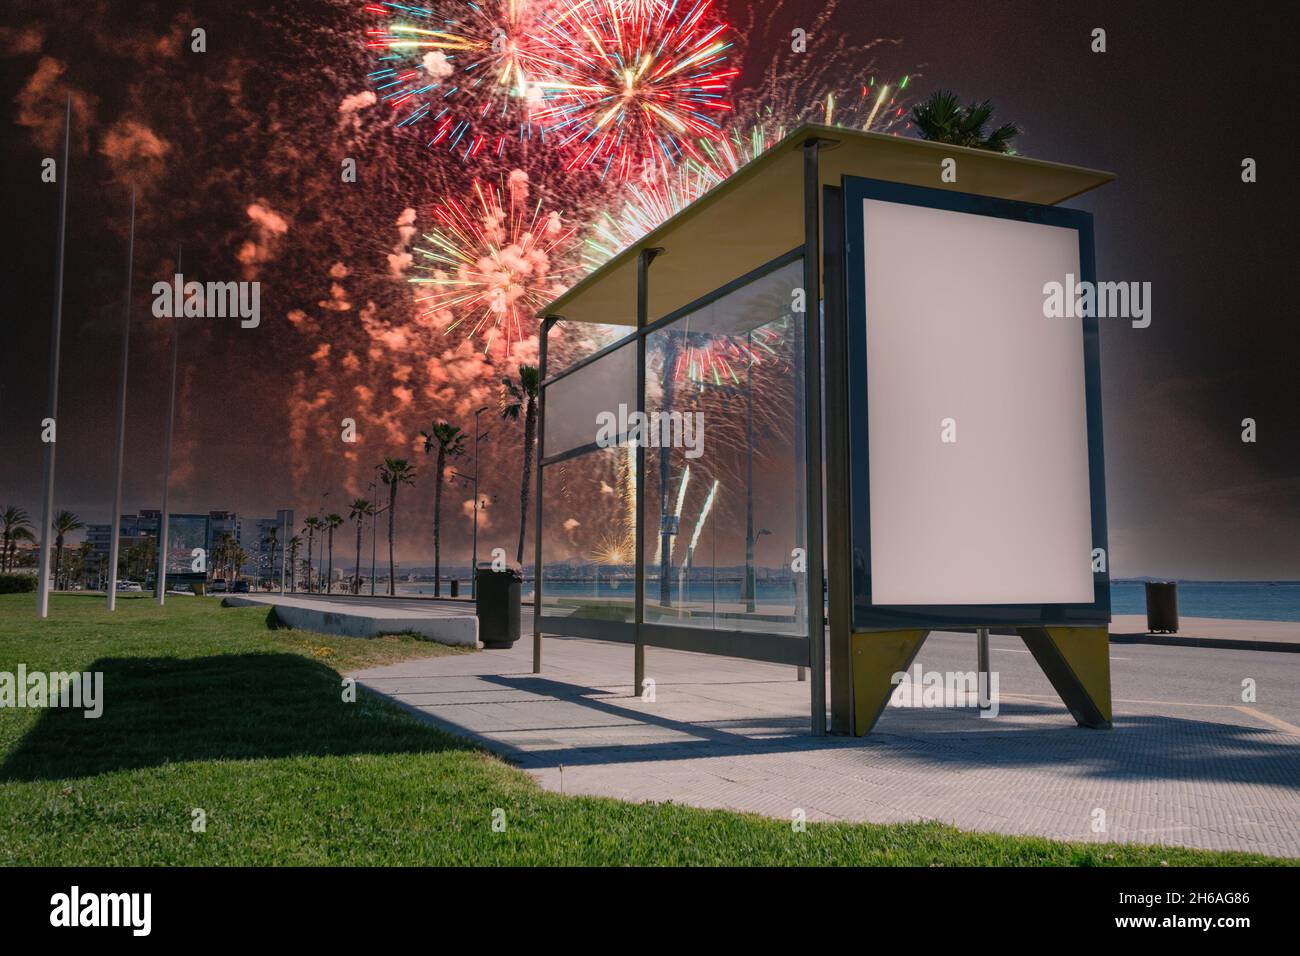 Leere Werbung in einer Bushaltestelle, mit Feuerwerk im Hintergrund Stockfoto